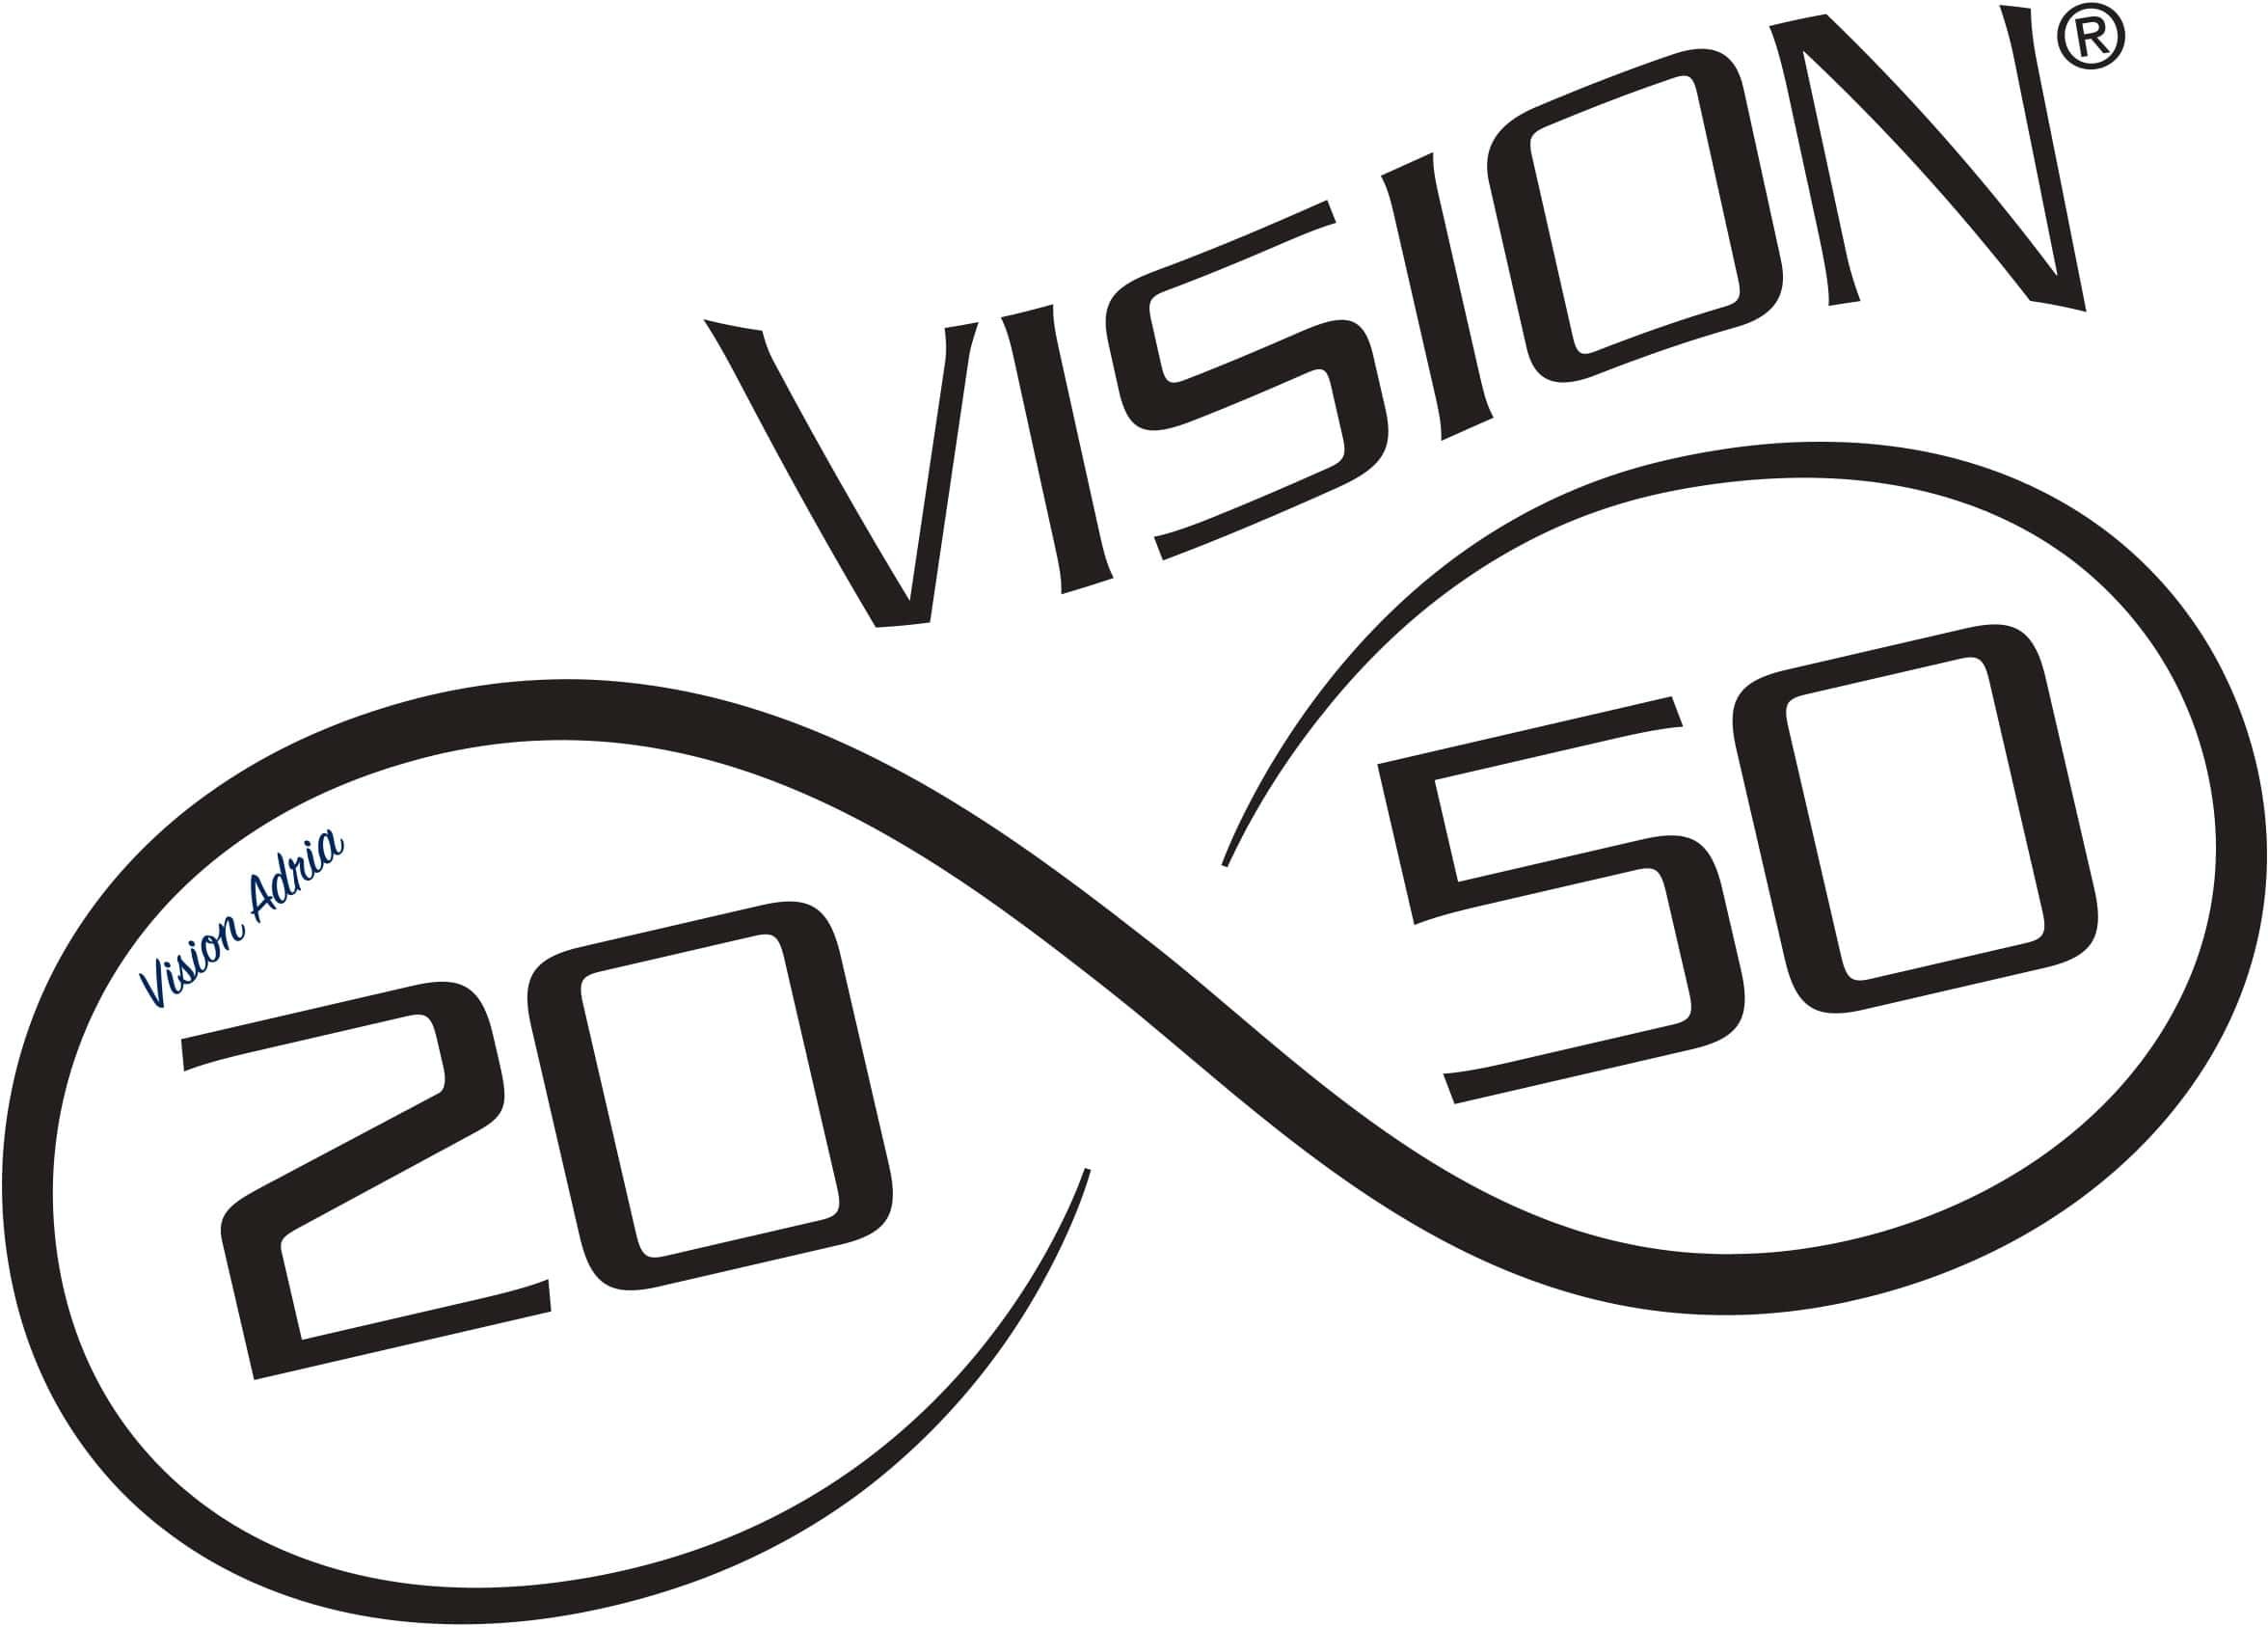 Visionadria logo 2050